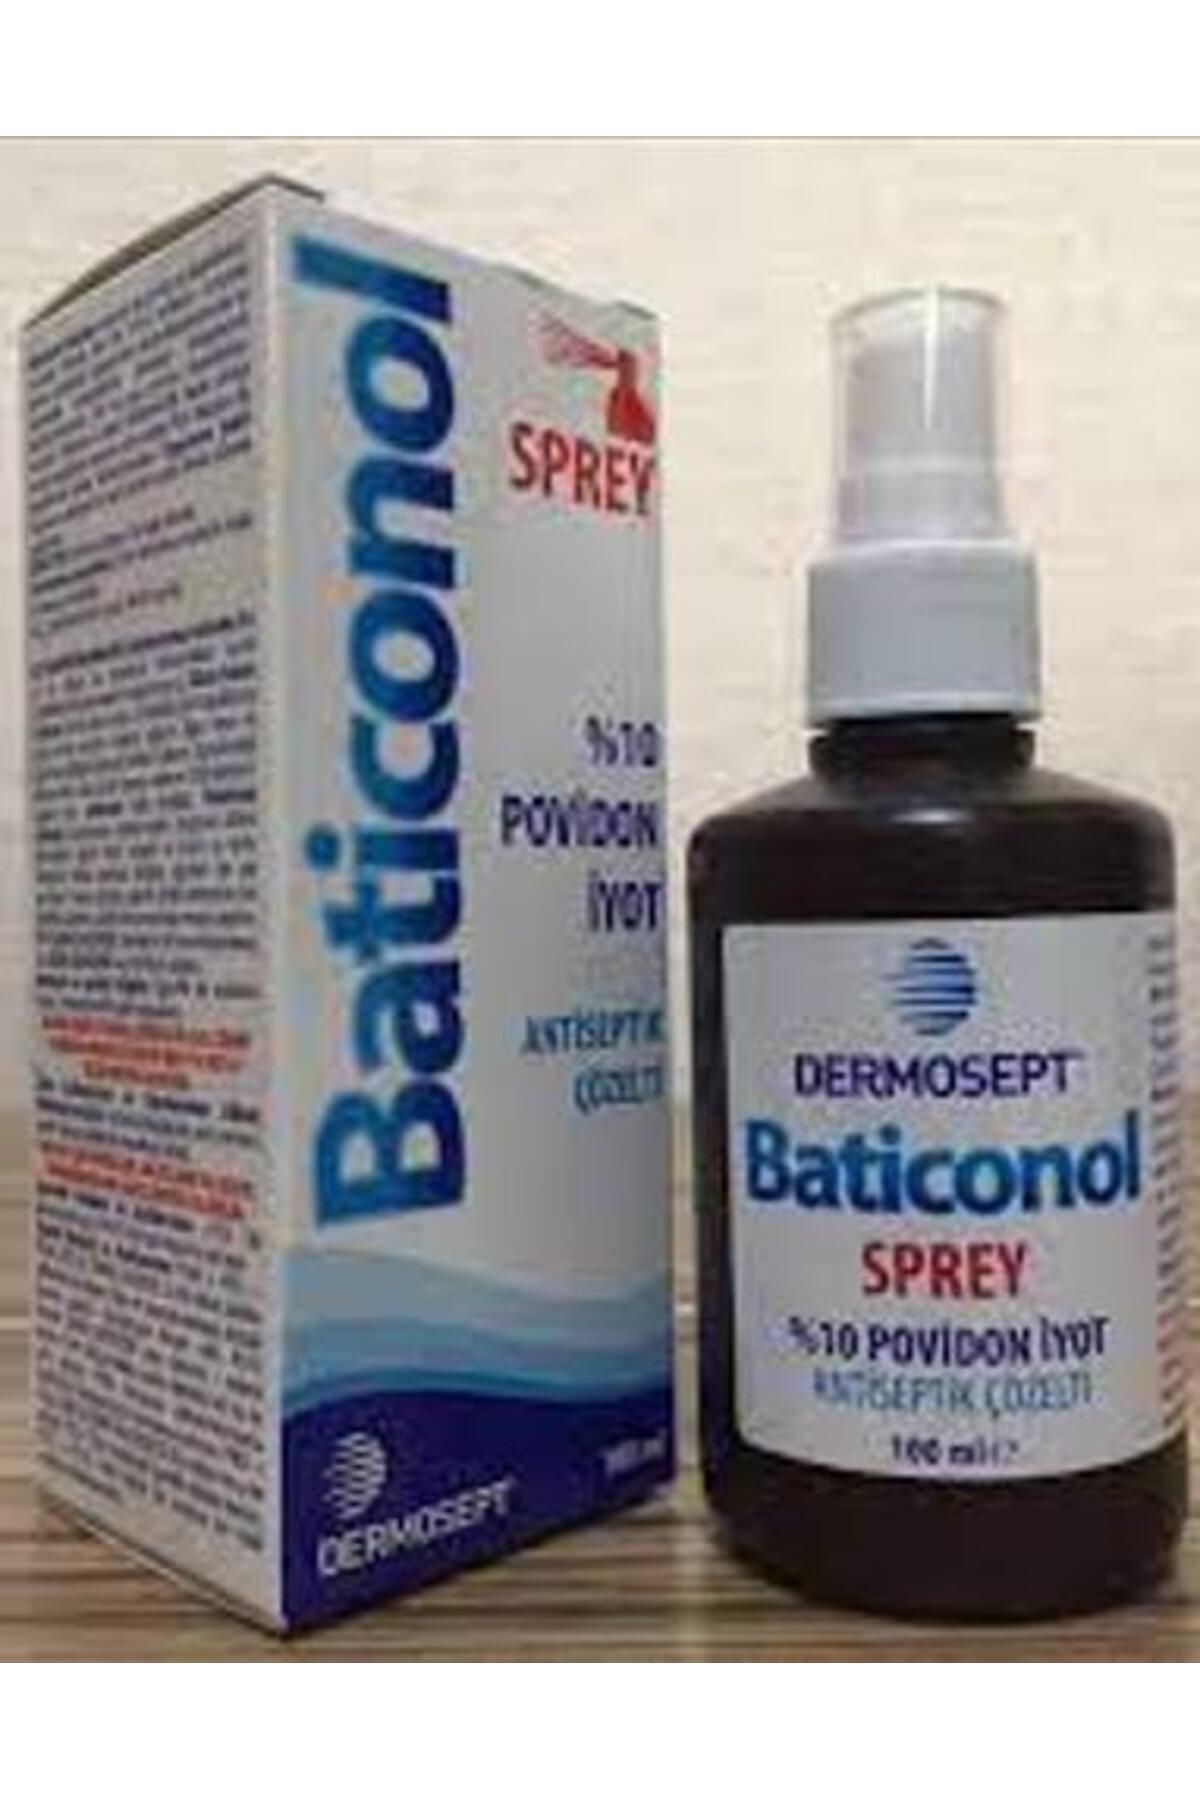 Dermosept Baticonol Sprey 100ml